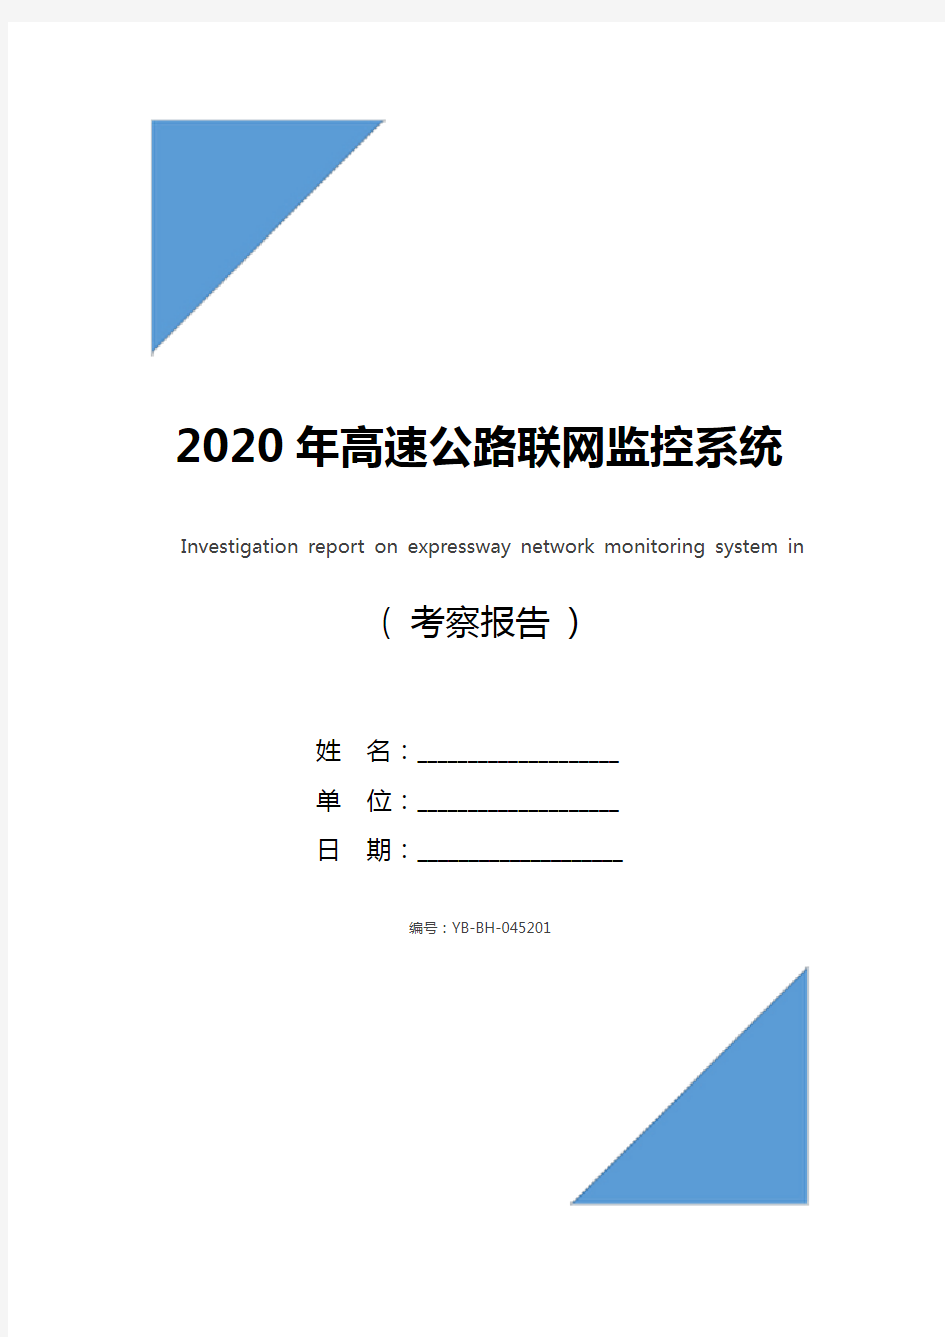 2020年高速公路联网监控系统考察报告_1